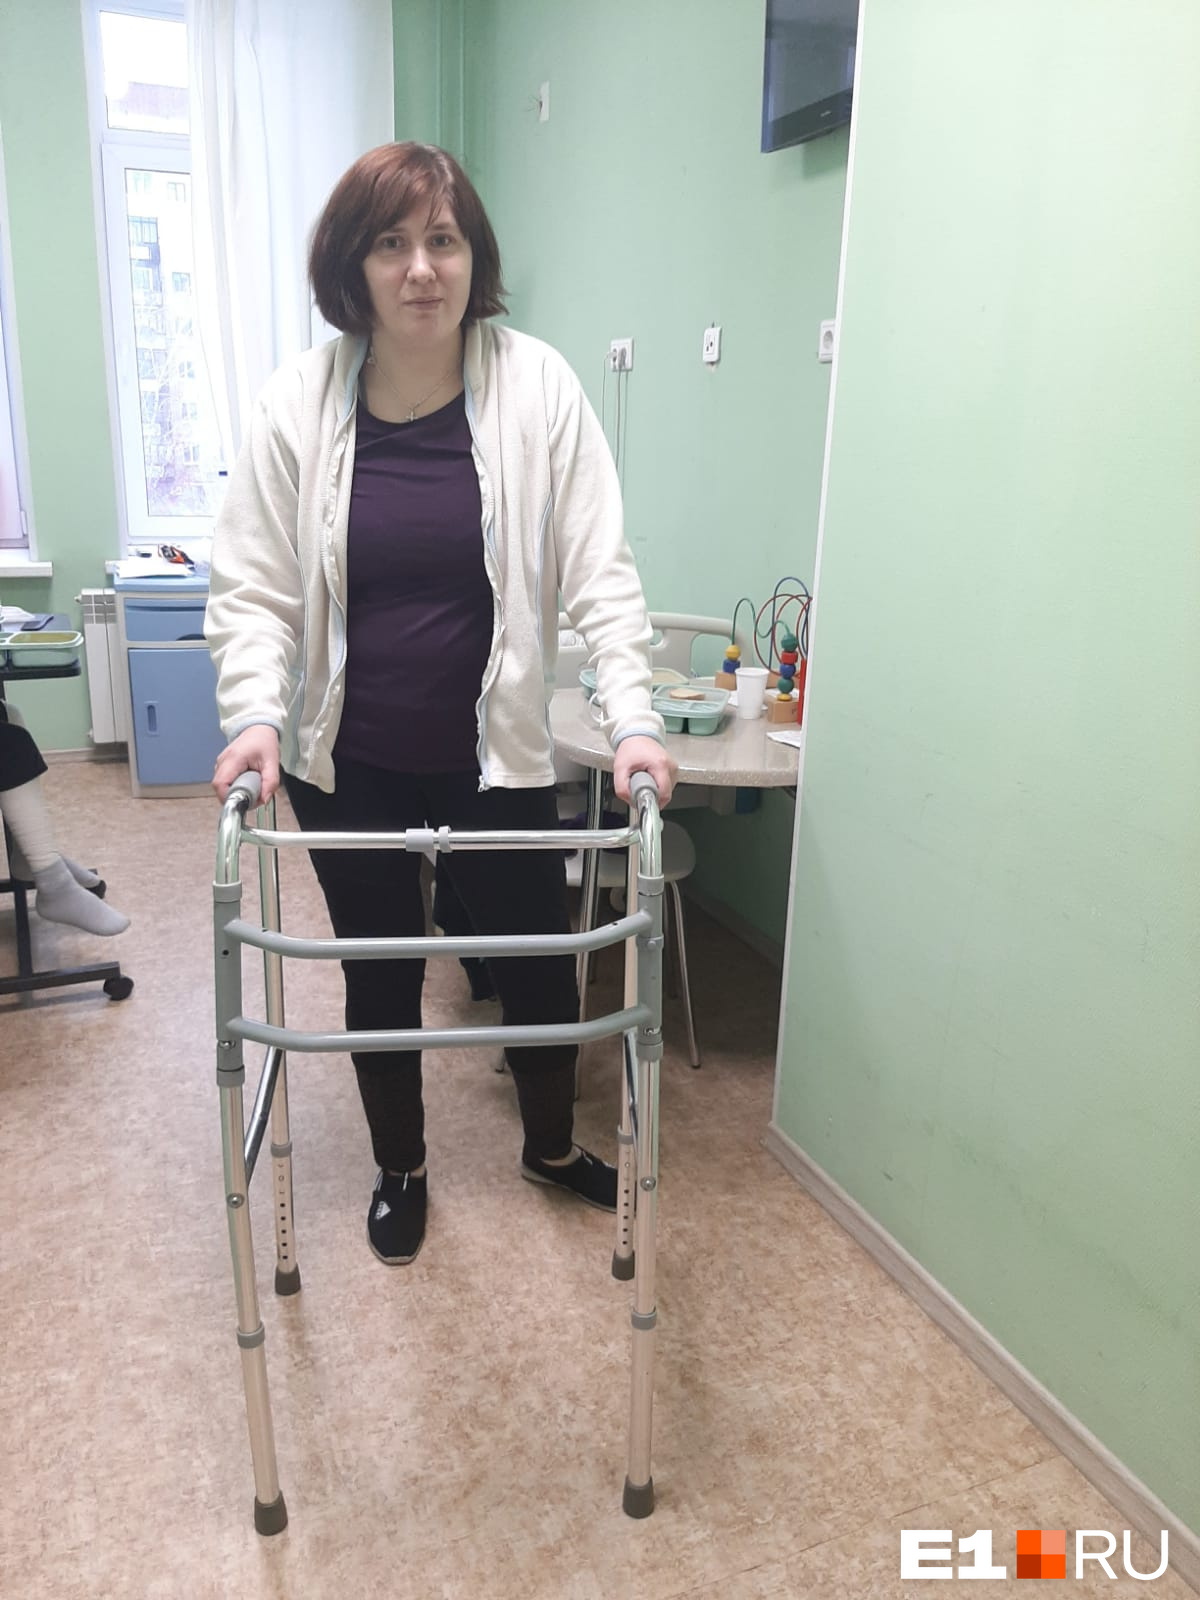 Спустя месяц после происшествия в трамвае Ольга всё еще не может нормально ходить